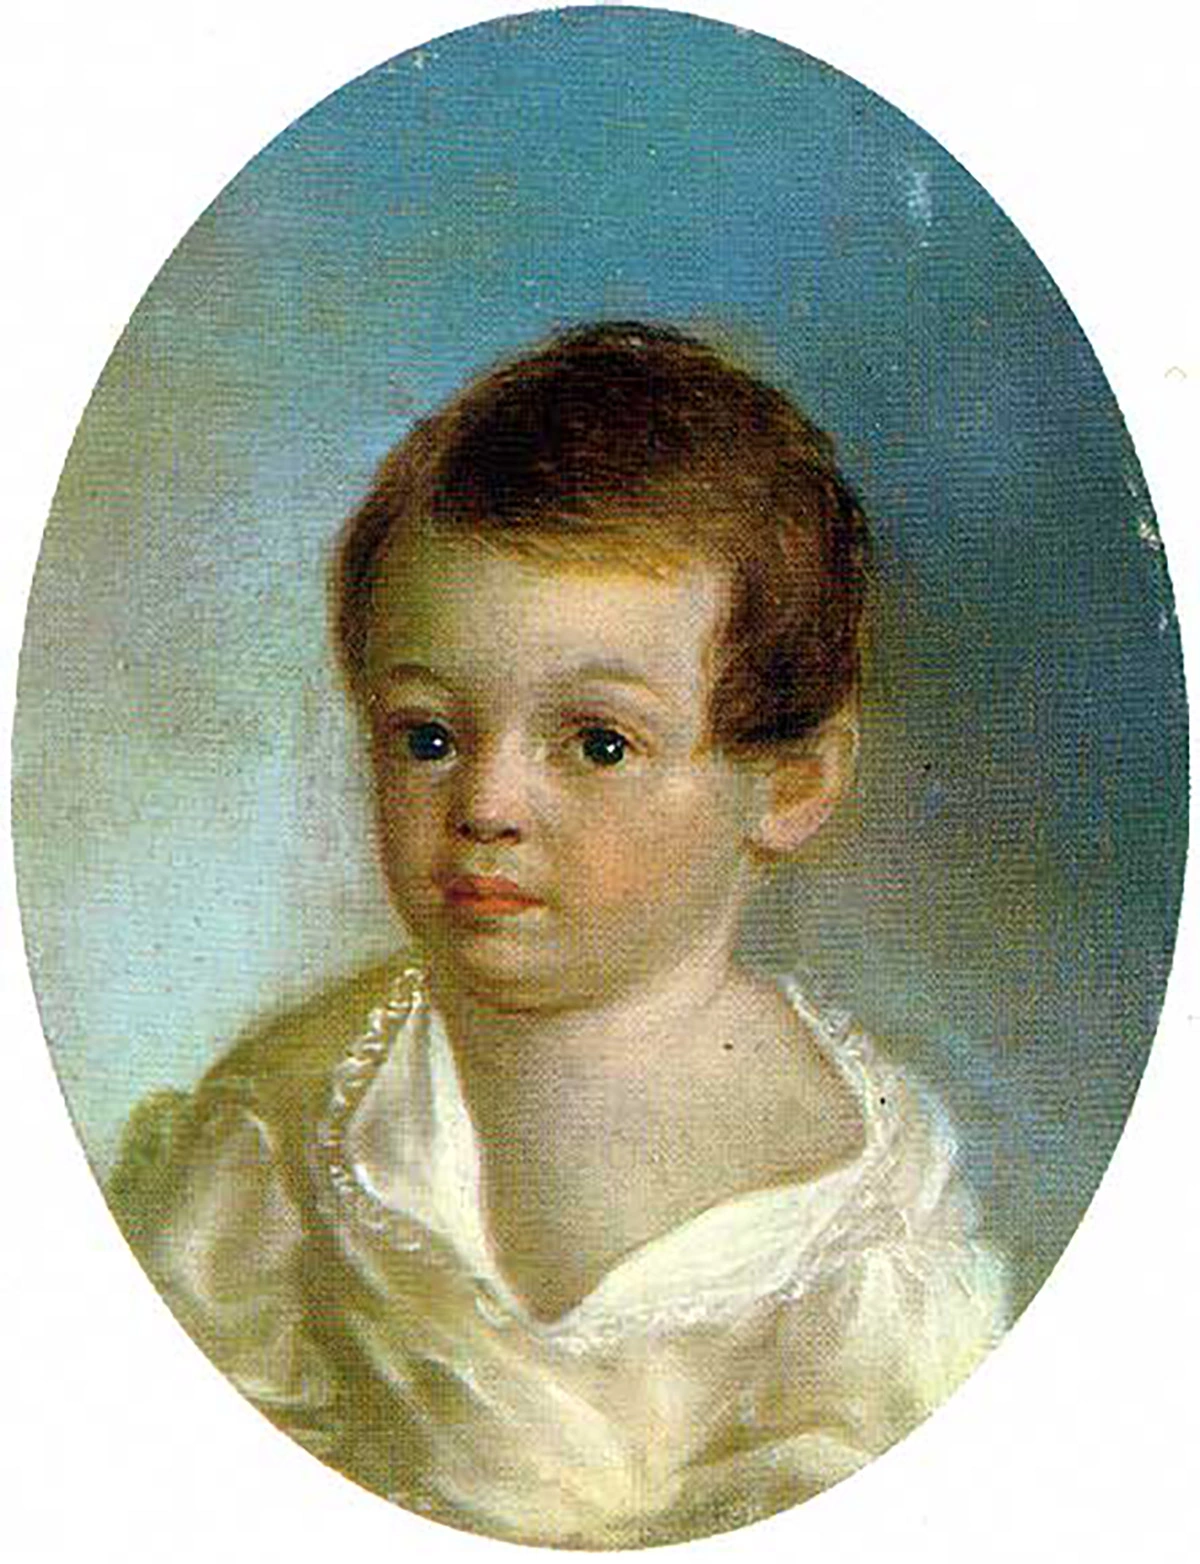 <p>Пушкин-ребенок.&nbsp;Ксавье&nbsp;де&nbsp;Местр. 1802 год</p>

<p></p>